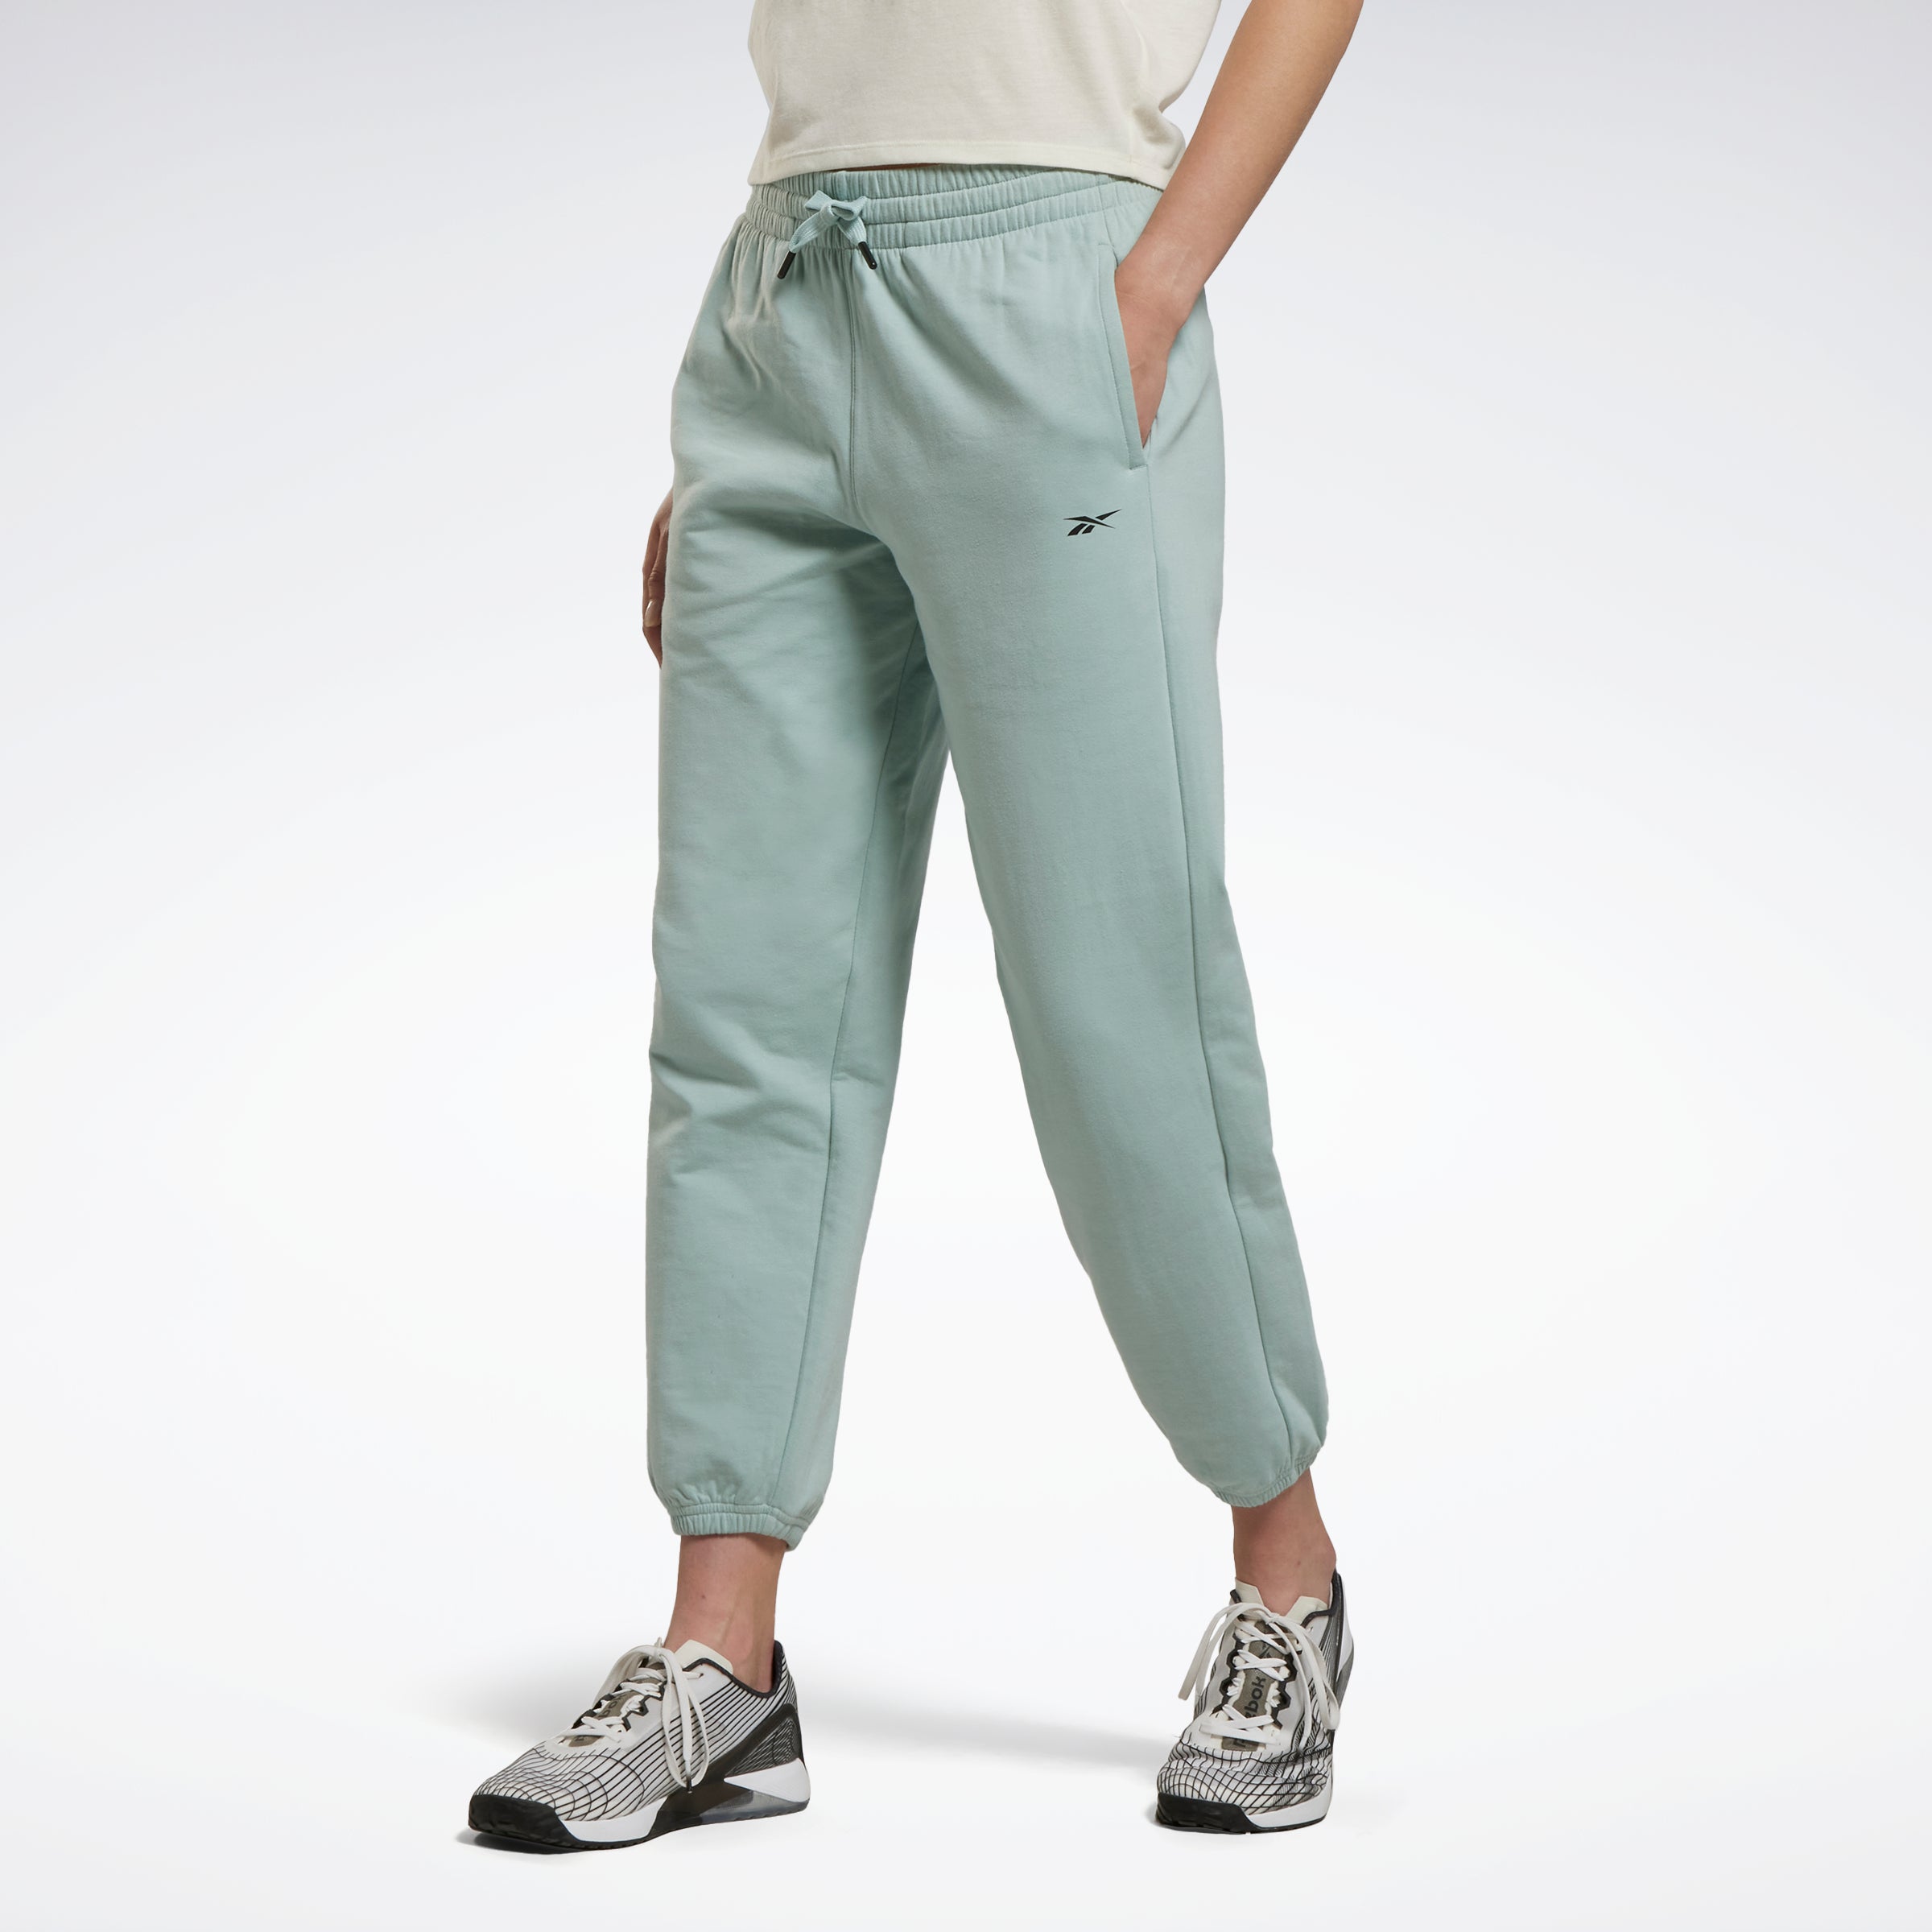 Reebok Women's Elite Cozy Gray Pink Fleece Jogger Pants, M, L, XL